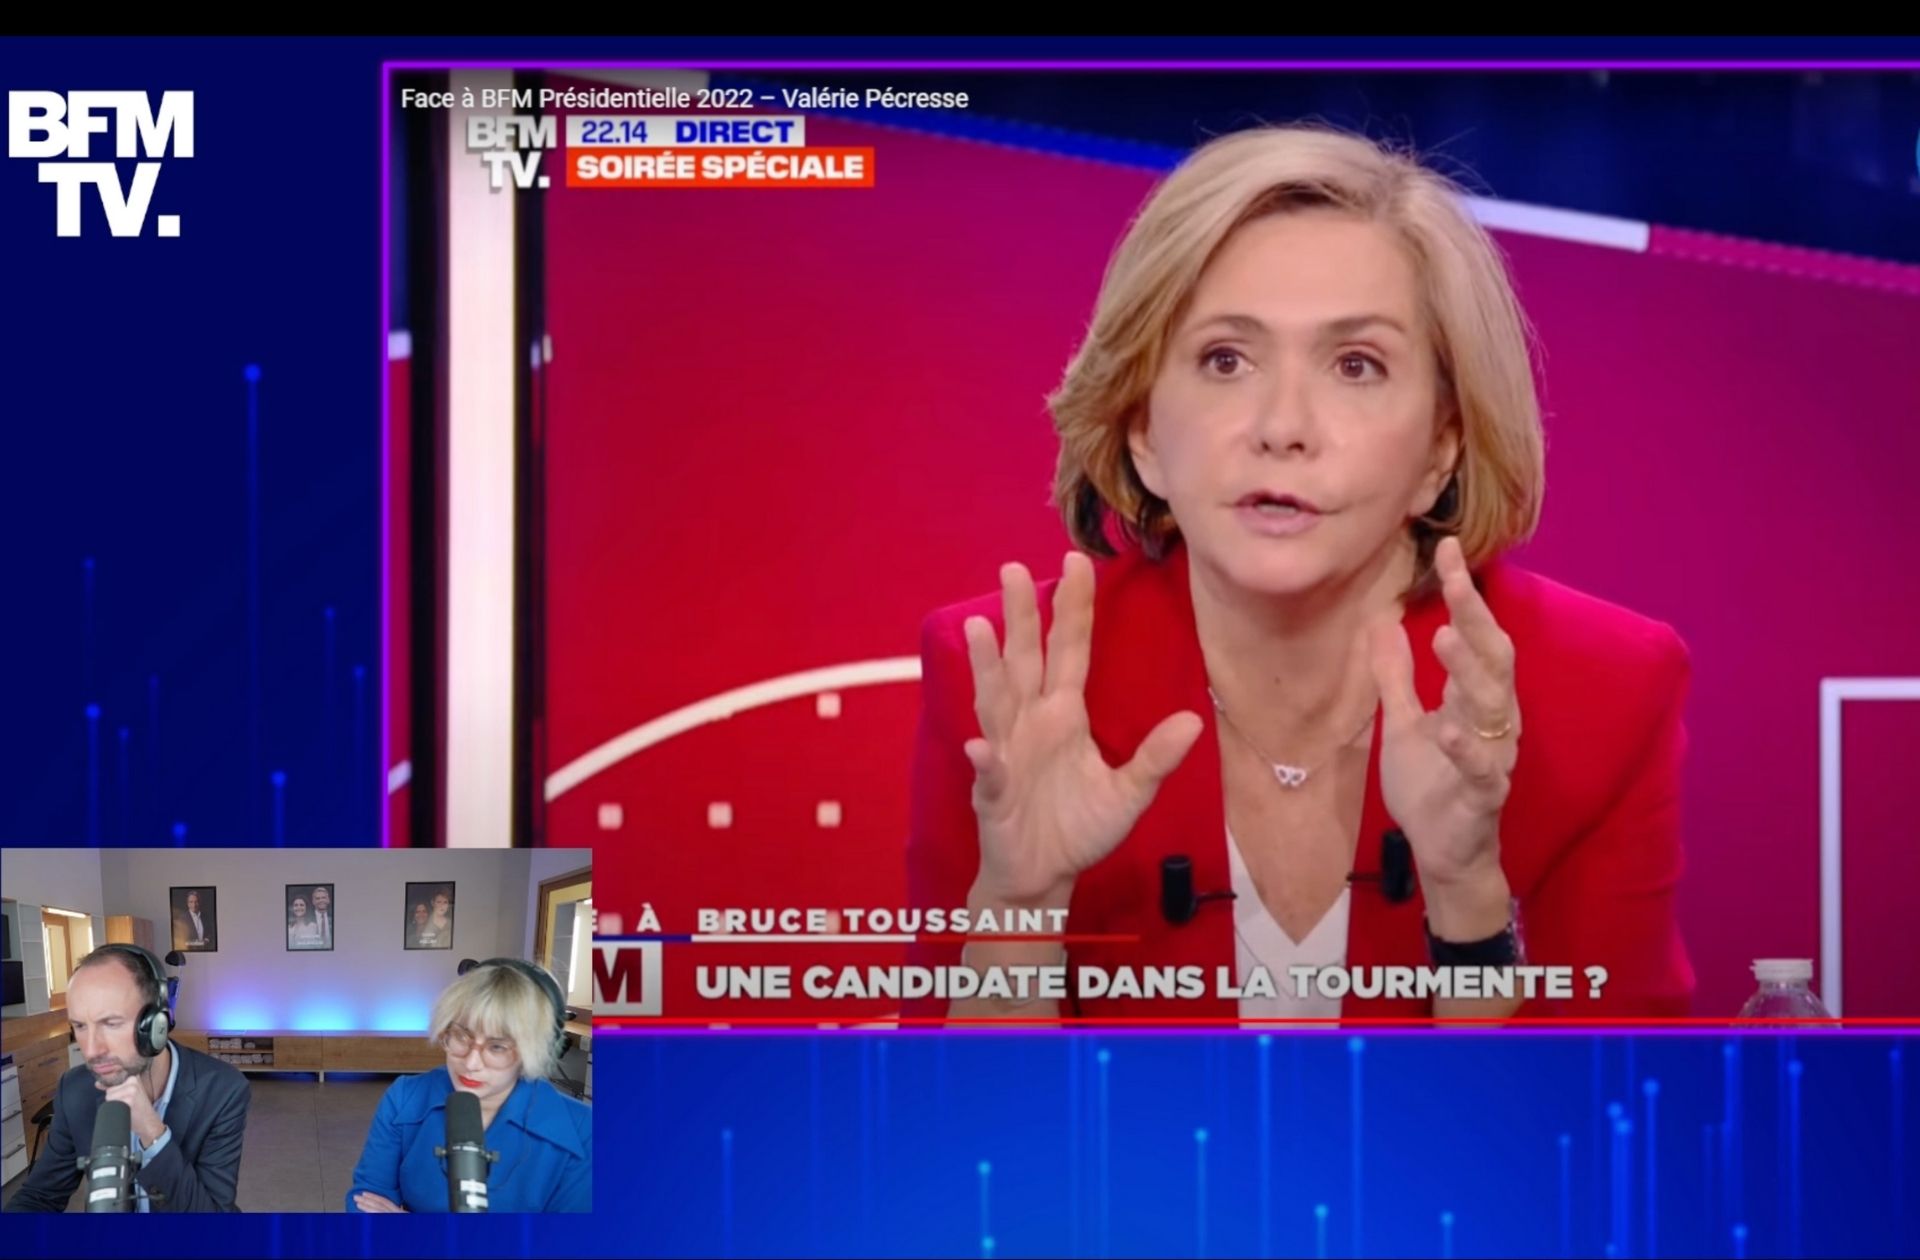 Valérie Pécresse, candidate à la présidentielle, parle de l’agression sexuelle qu’elle a subie et ça n’a rien d’anodin